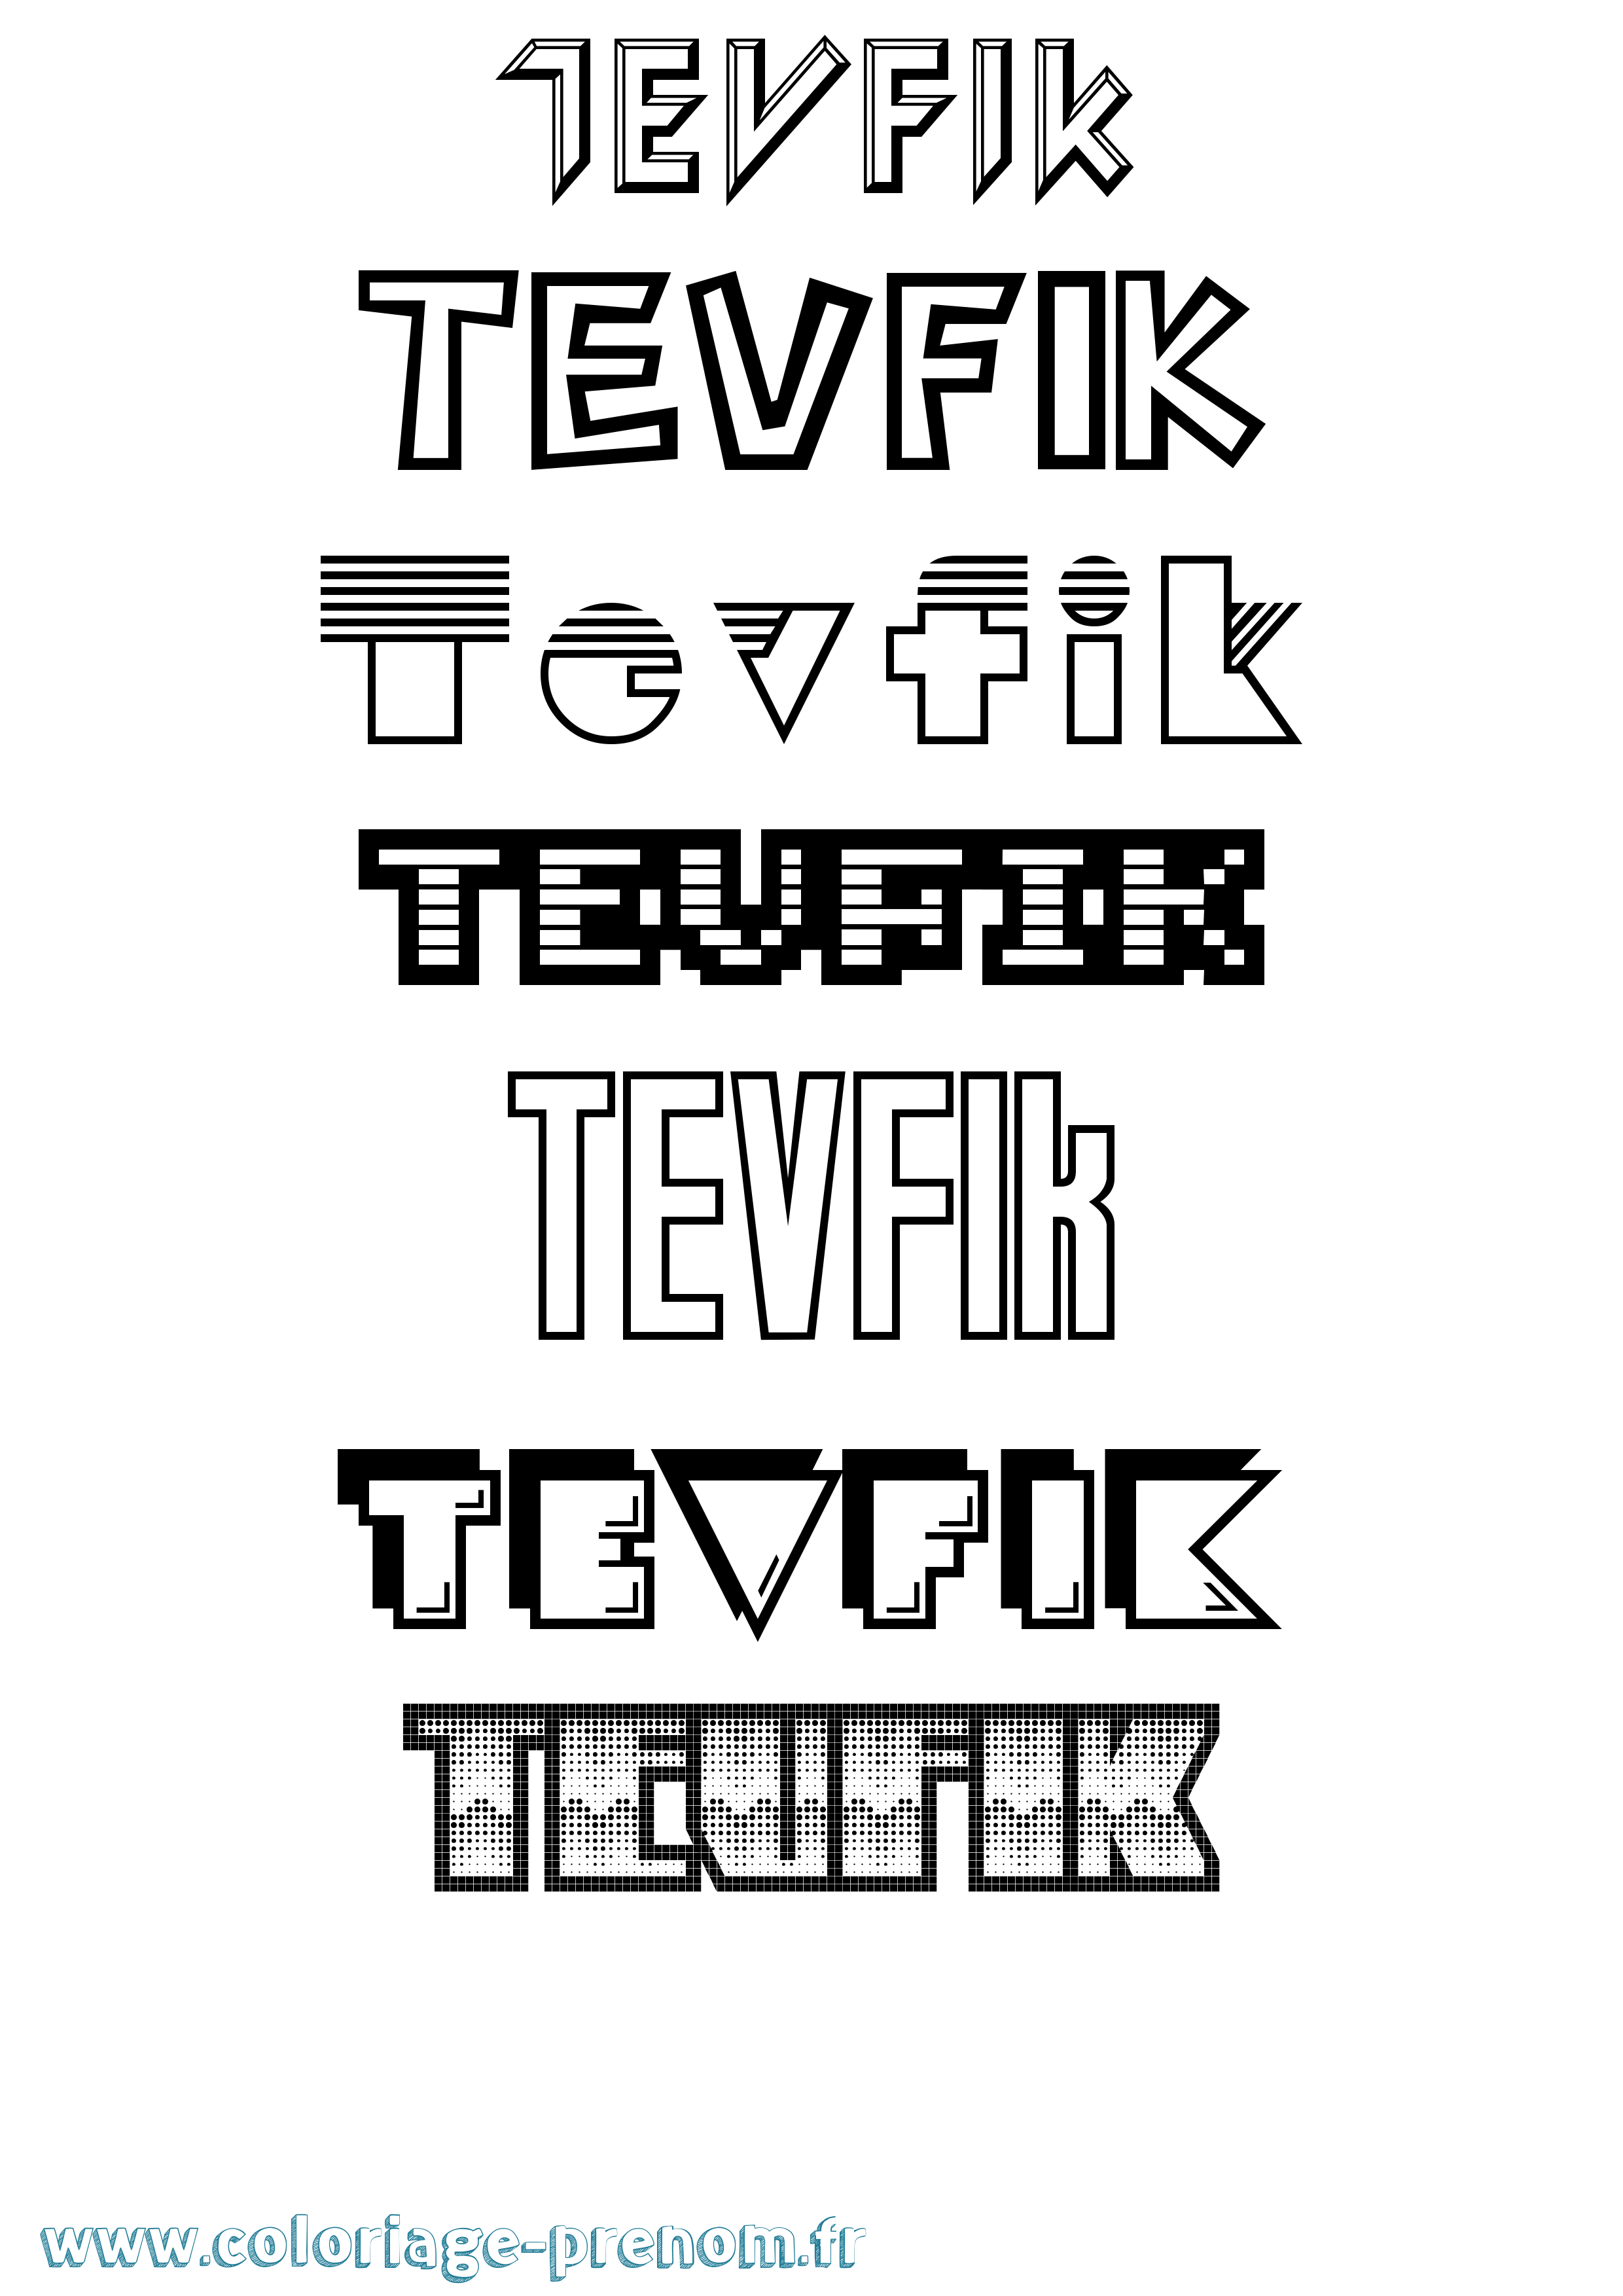 Coloriage prénom Tevfik Jeux Vidéos